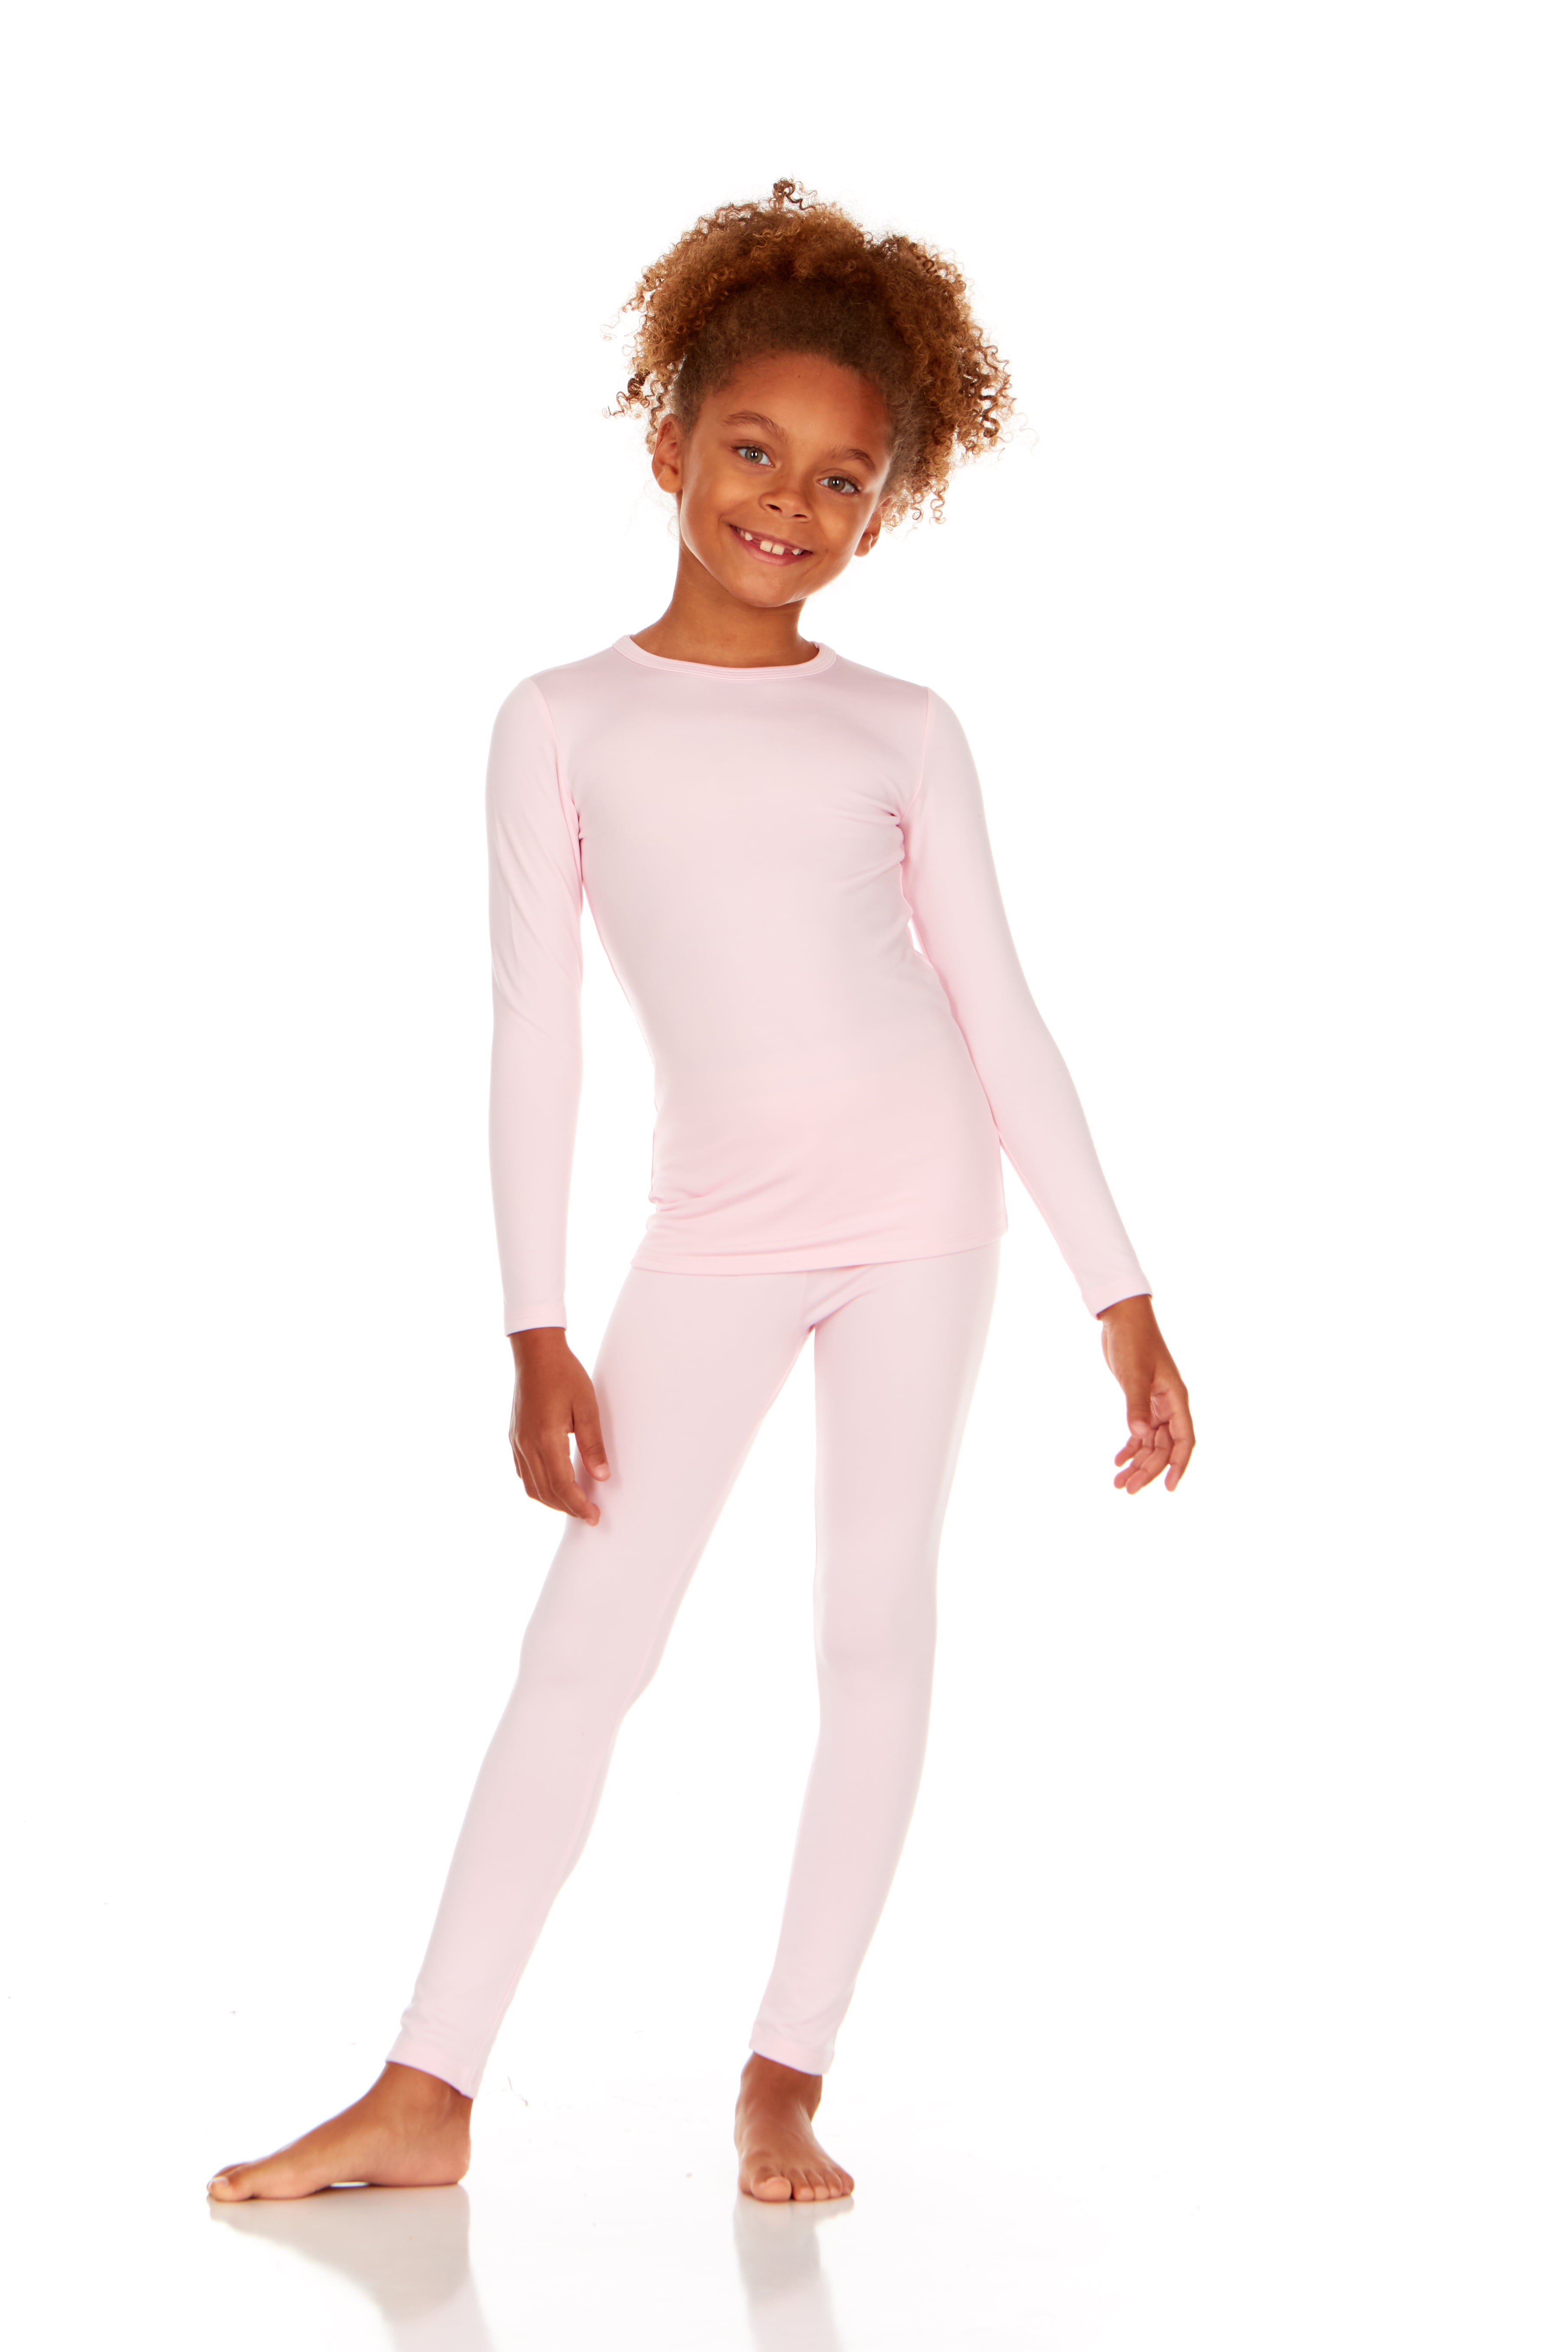 Thermajane Thermal Underwear for Girls Long John Set Kids (Baby Pink, X ...